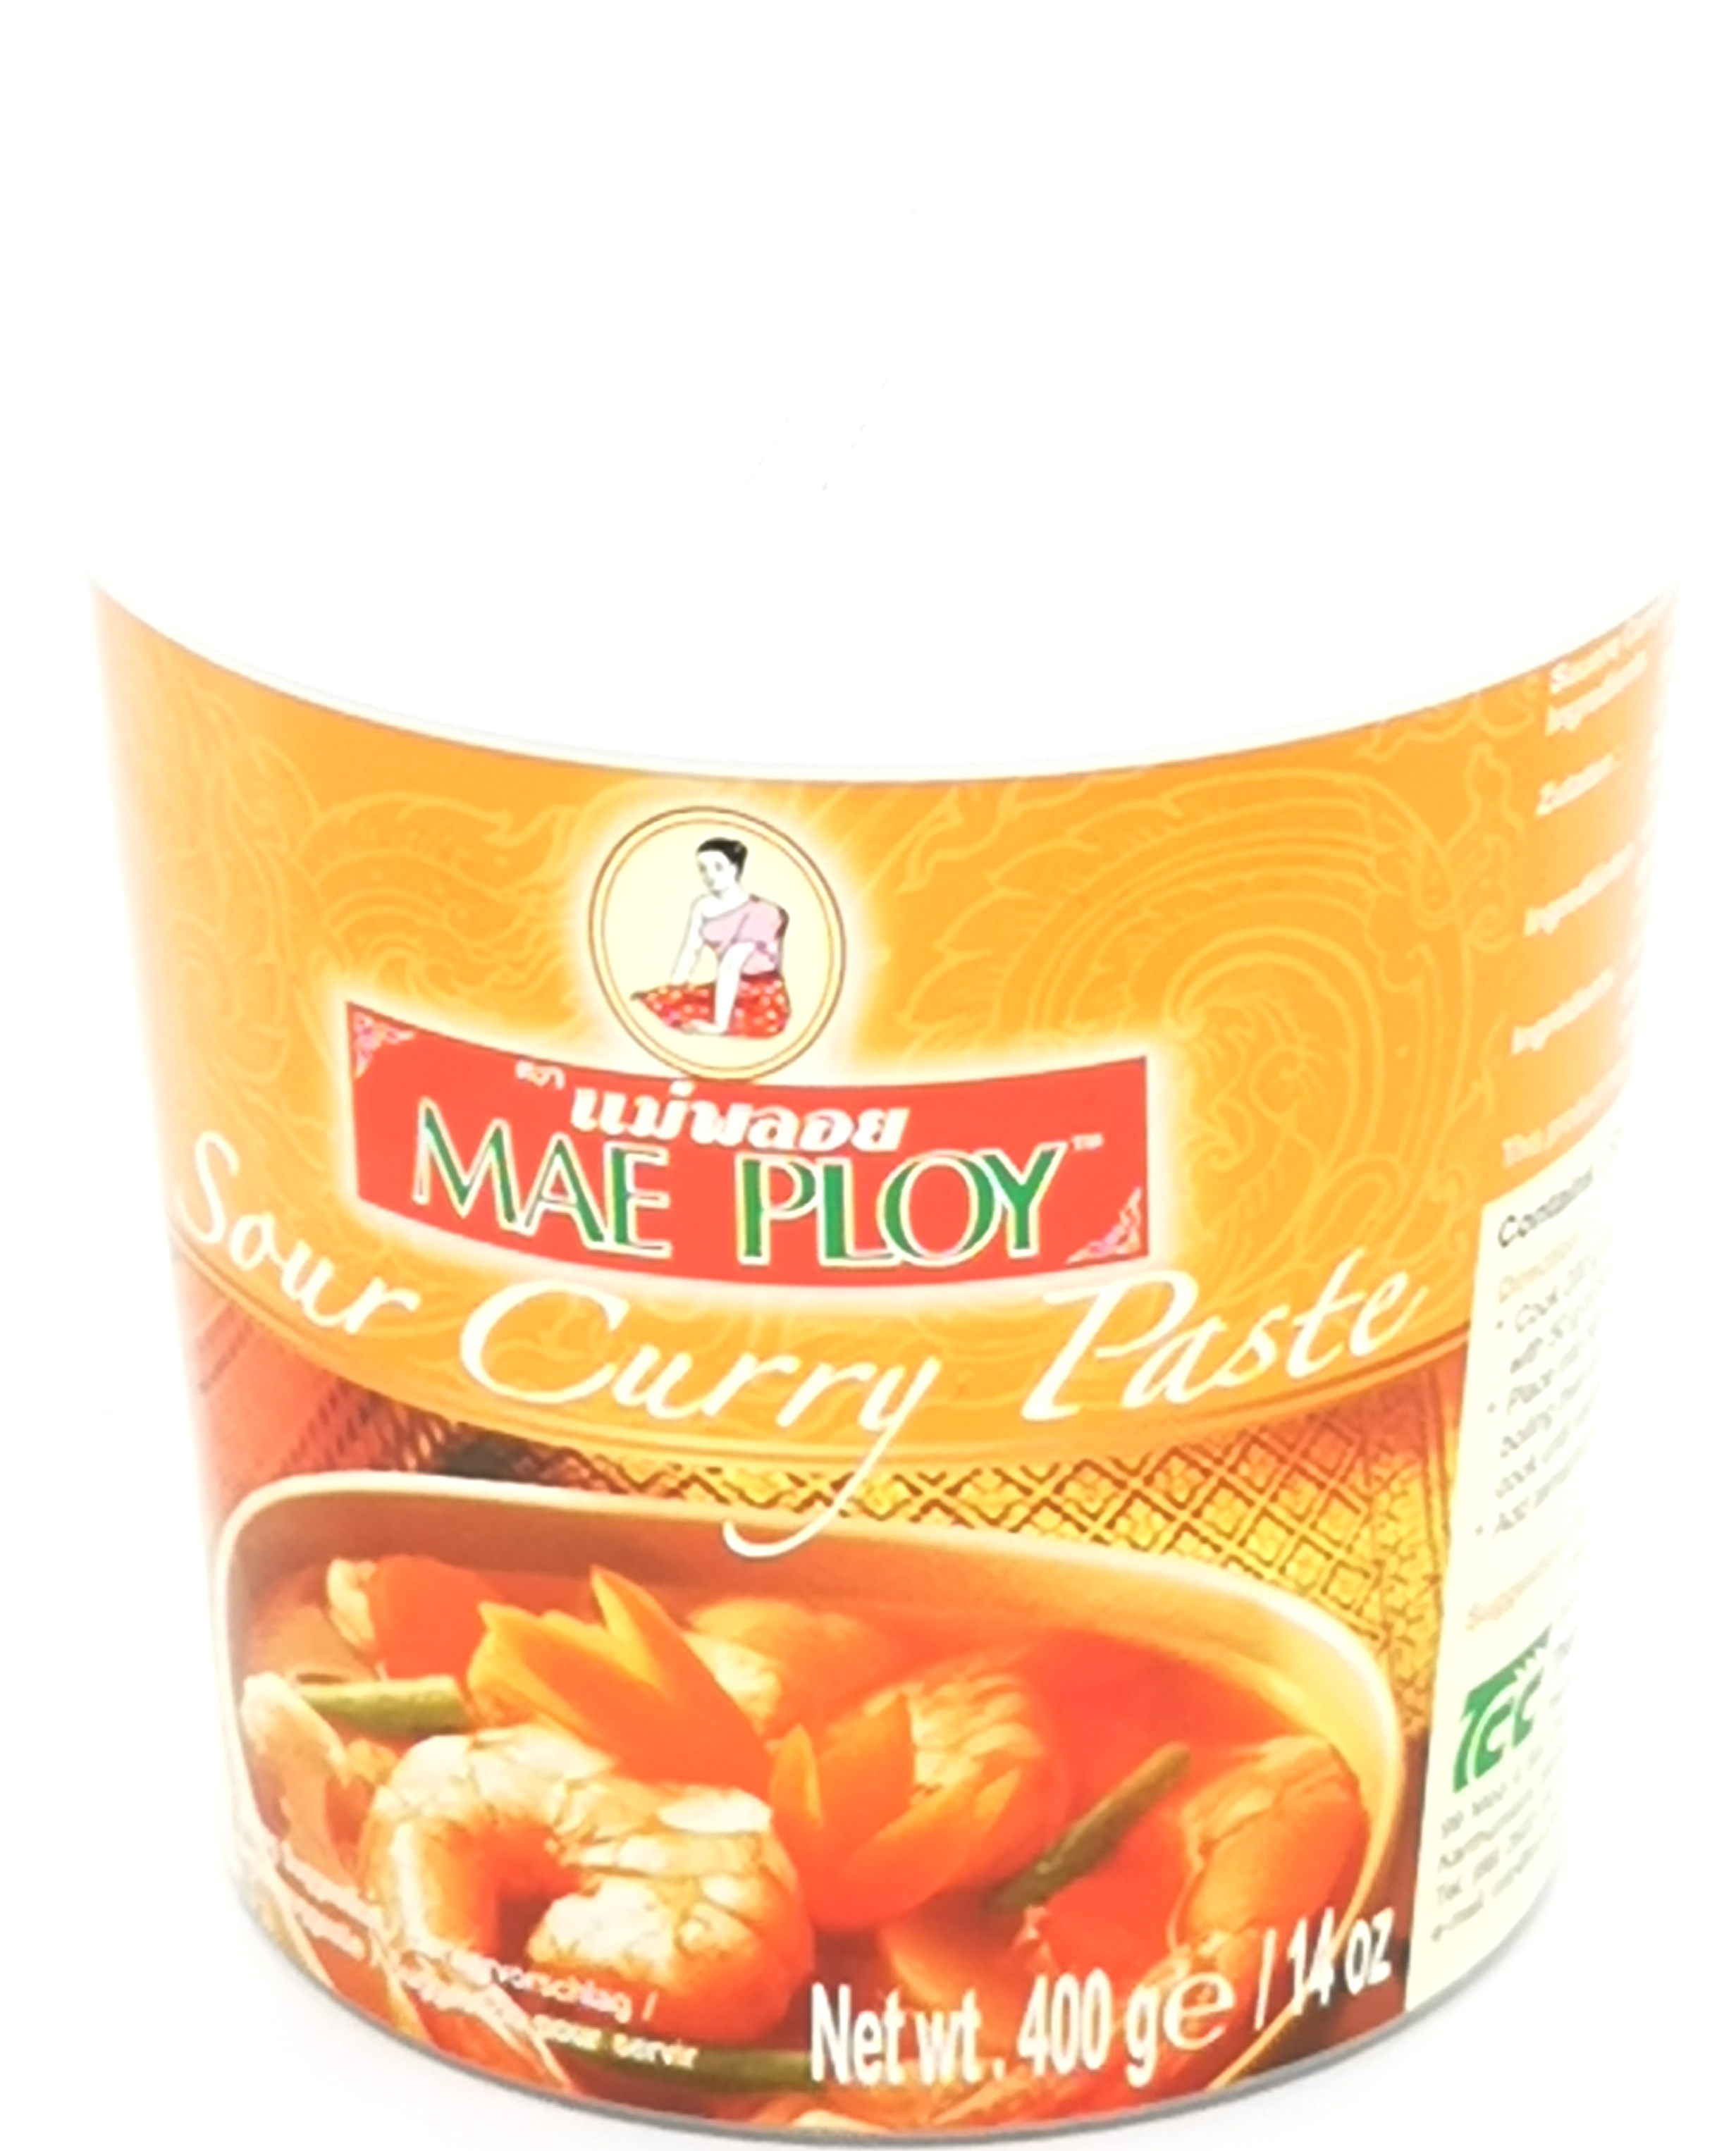 Mae Ploy sur curry pasta, 400g